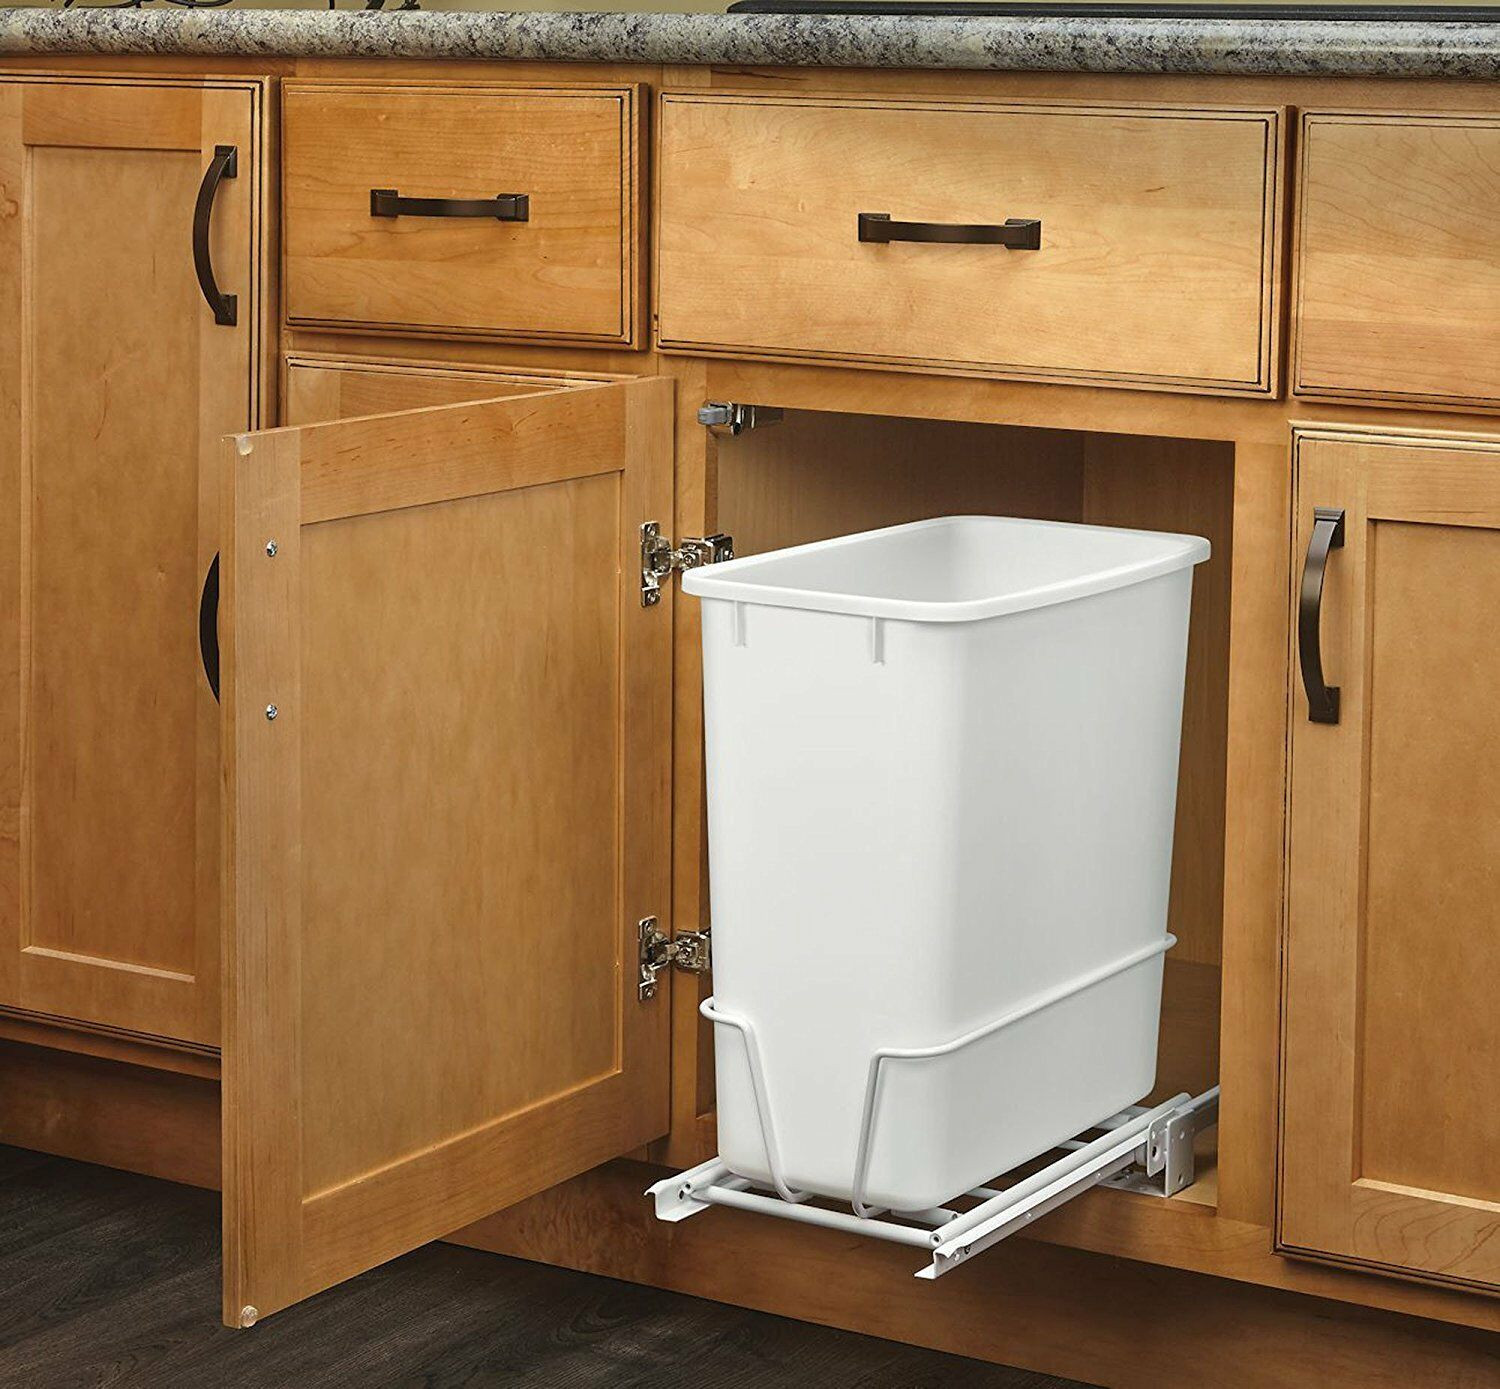 Kitchen Garbage Can Cabinet
 20 Quart White Trash Can Kitchen Waste Bin Garbage Pull